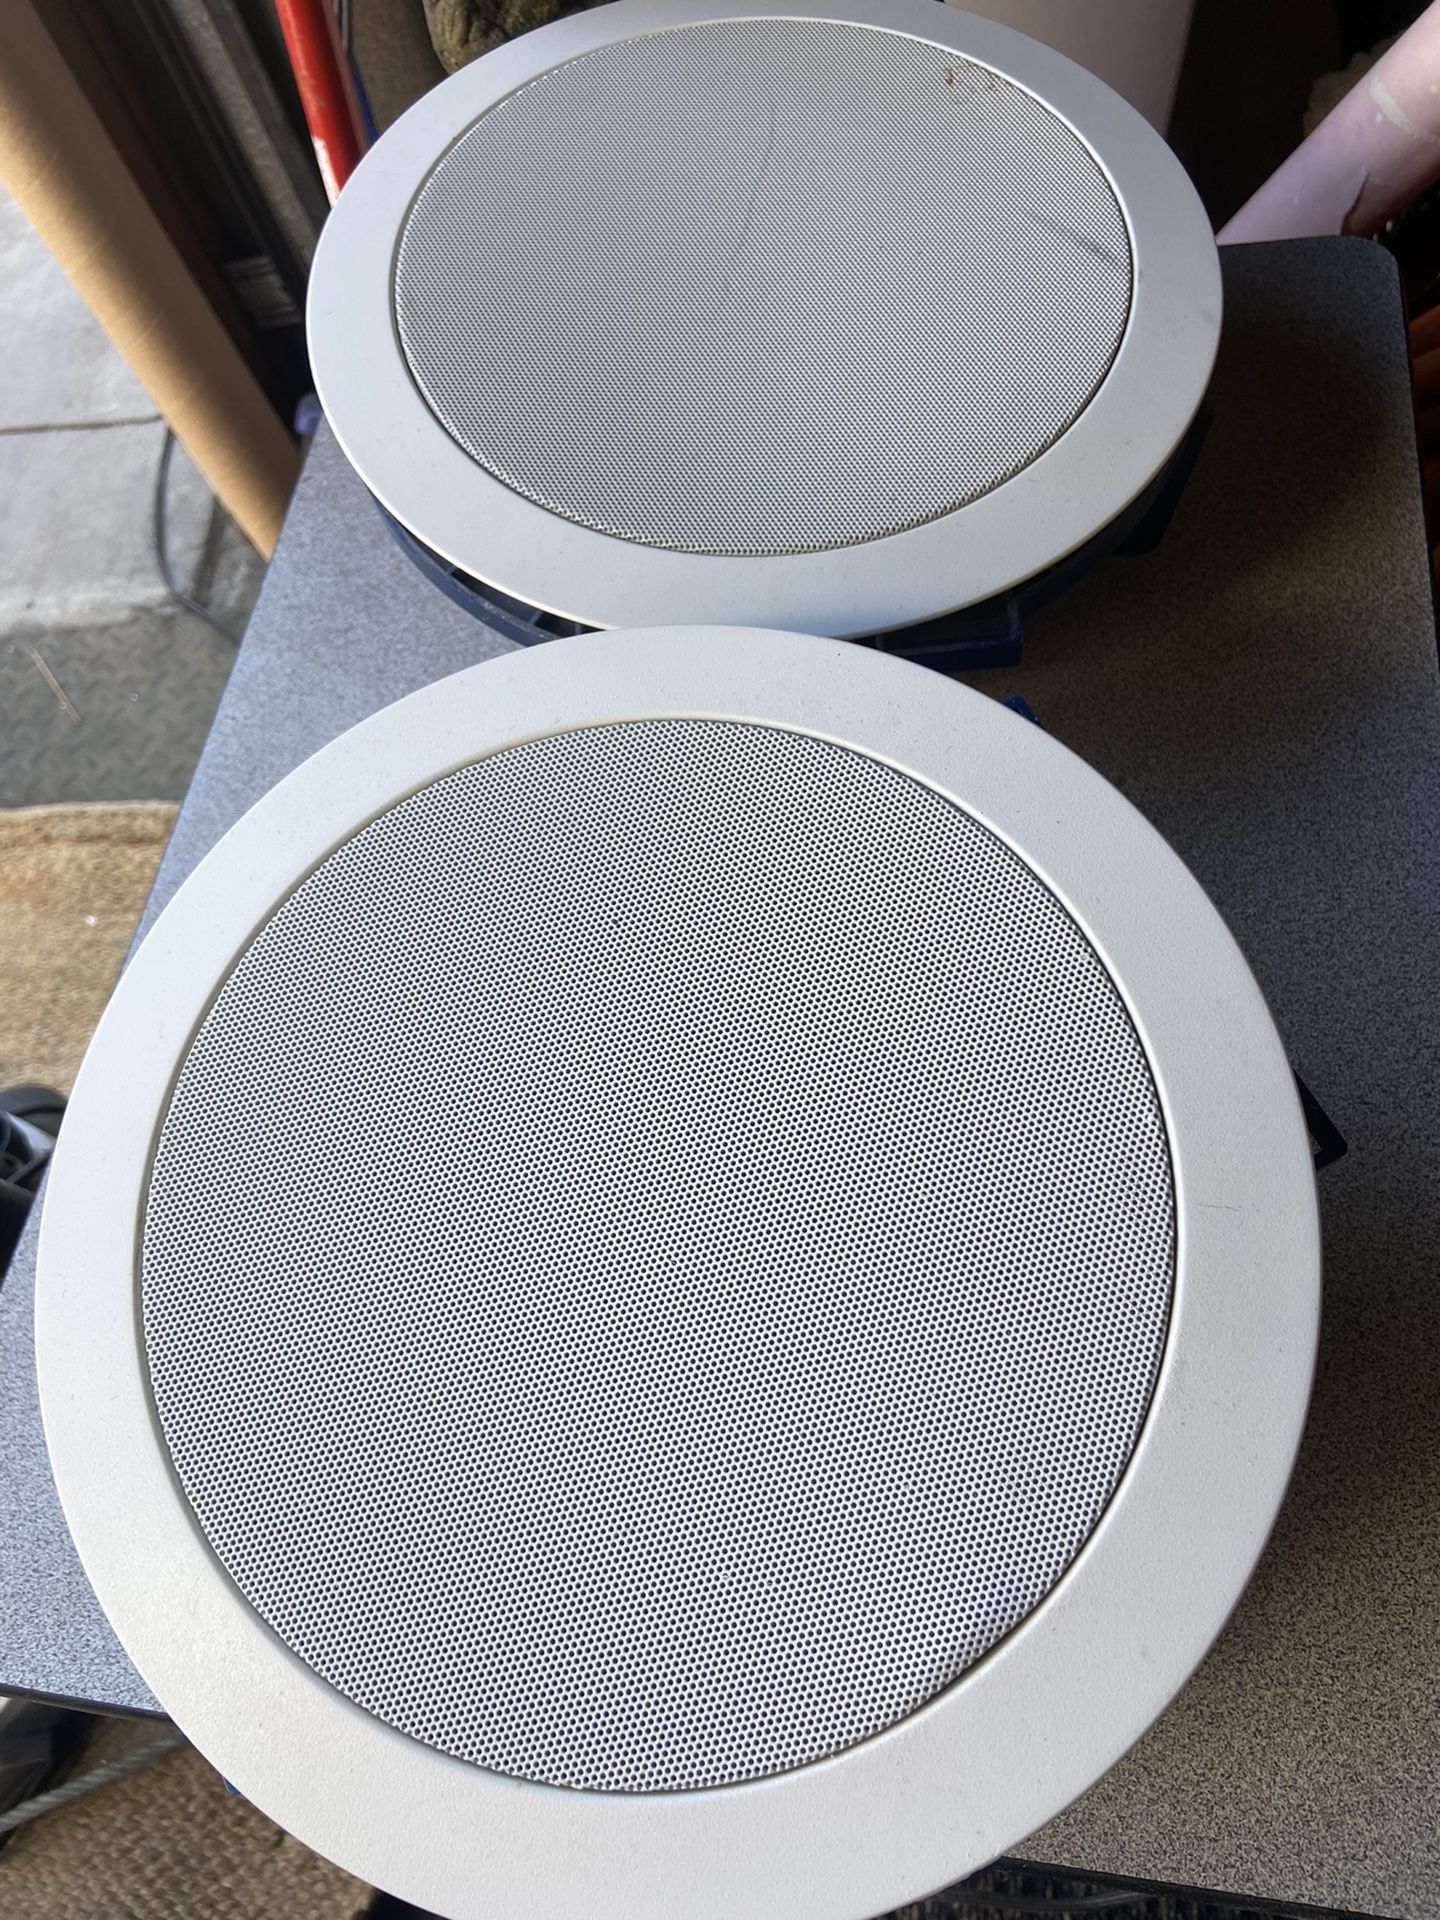 SpeakerCraft AIM7 Two Ceiling Speakers